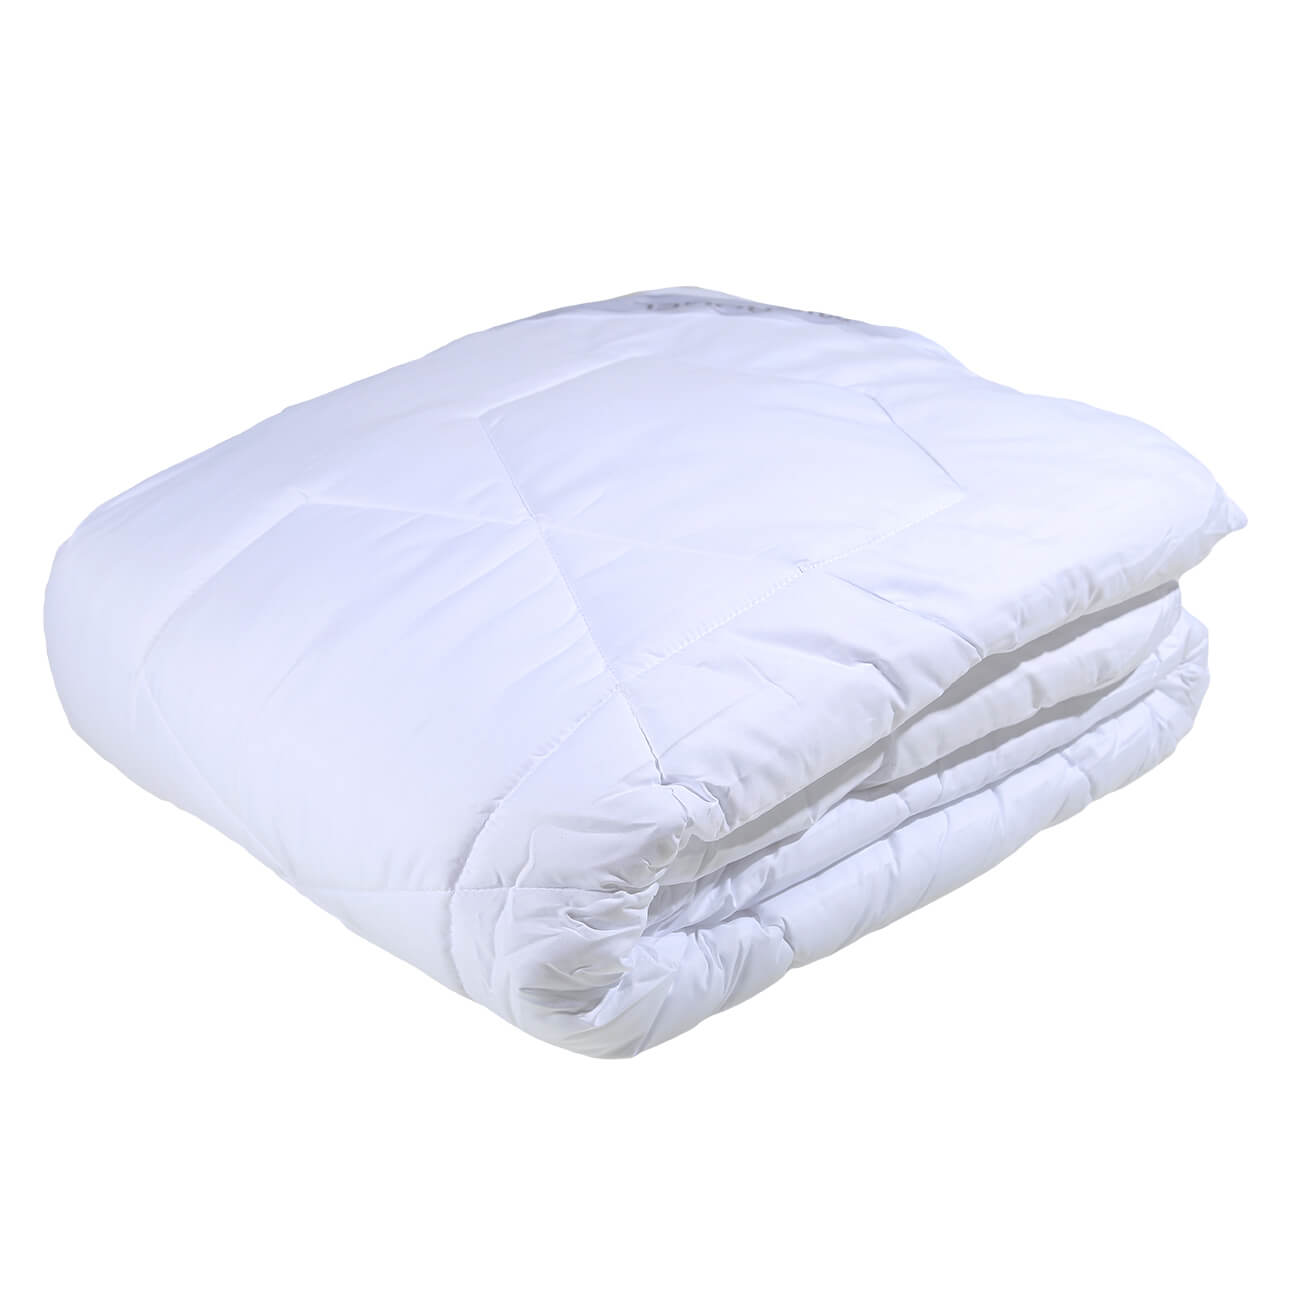 одеяло легкое 140x205 см файберсофт Одеяло, 200x220 cм, микрофибра/микрогель, Microgel